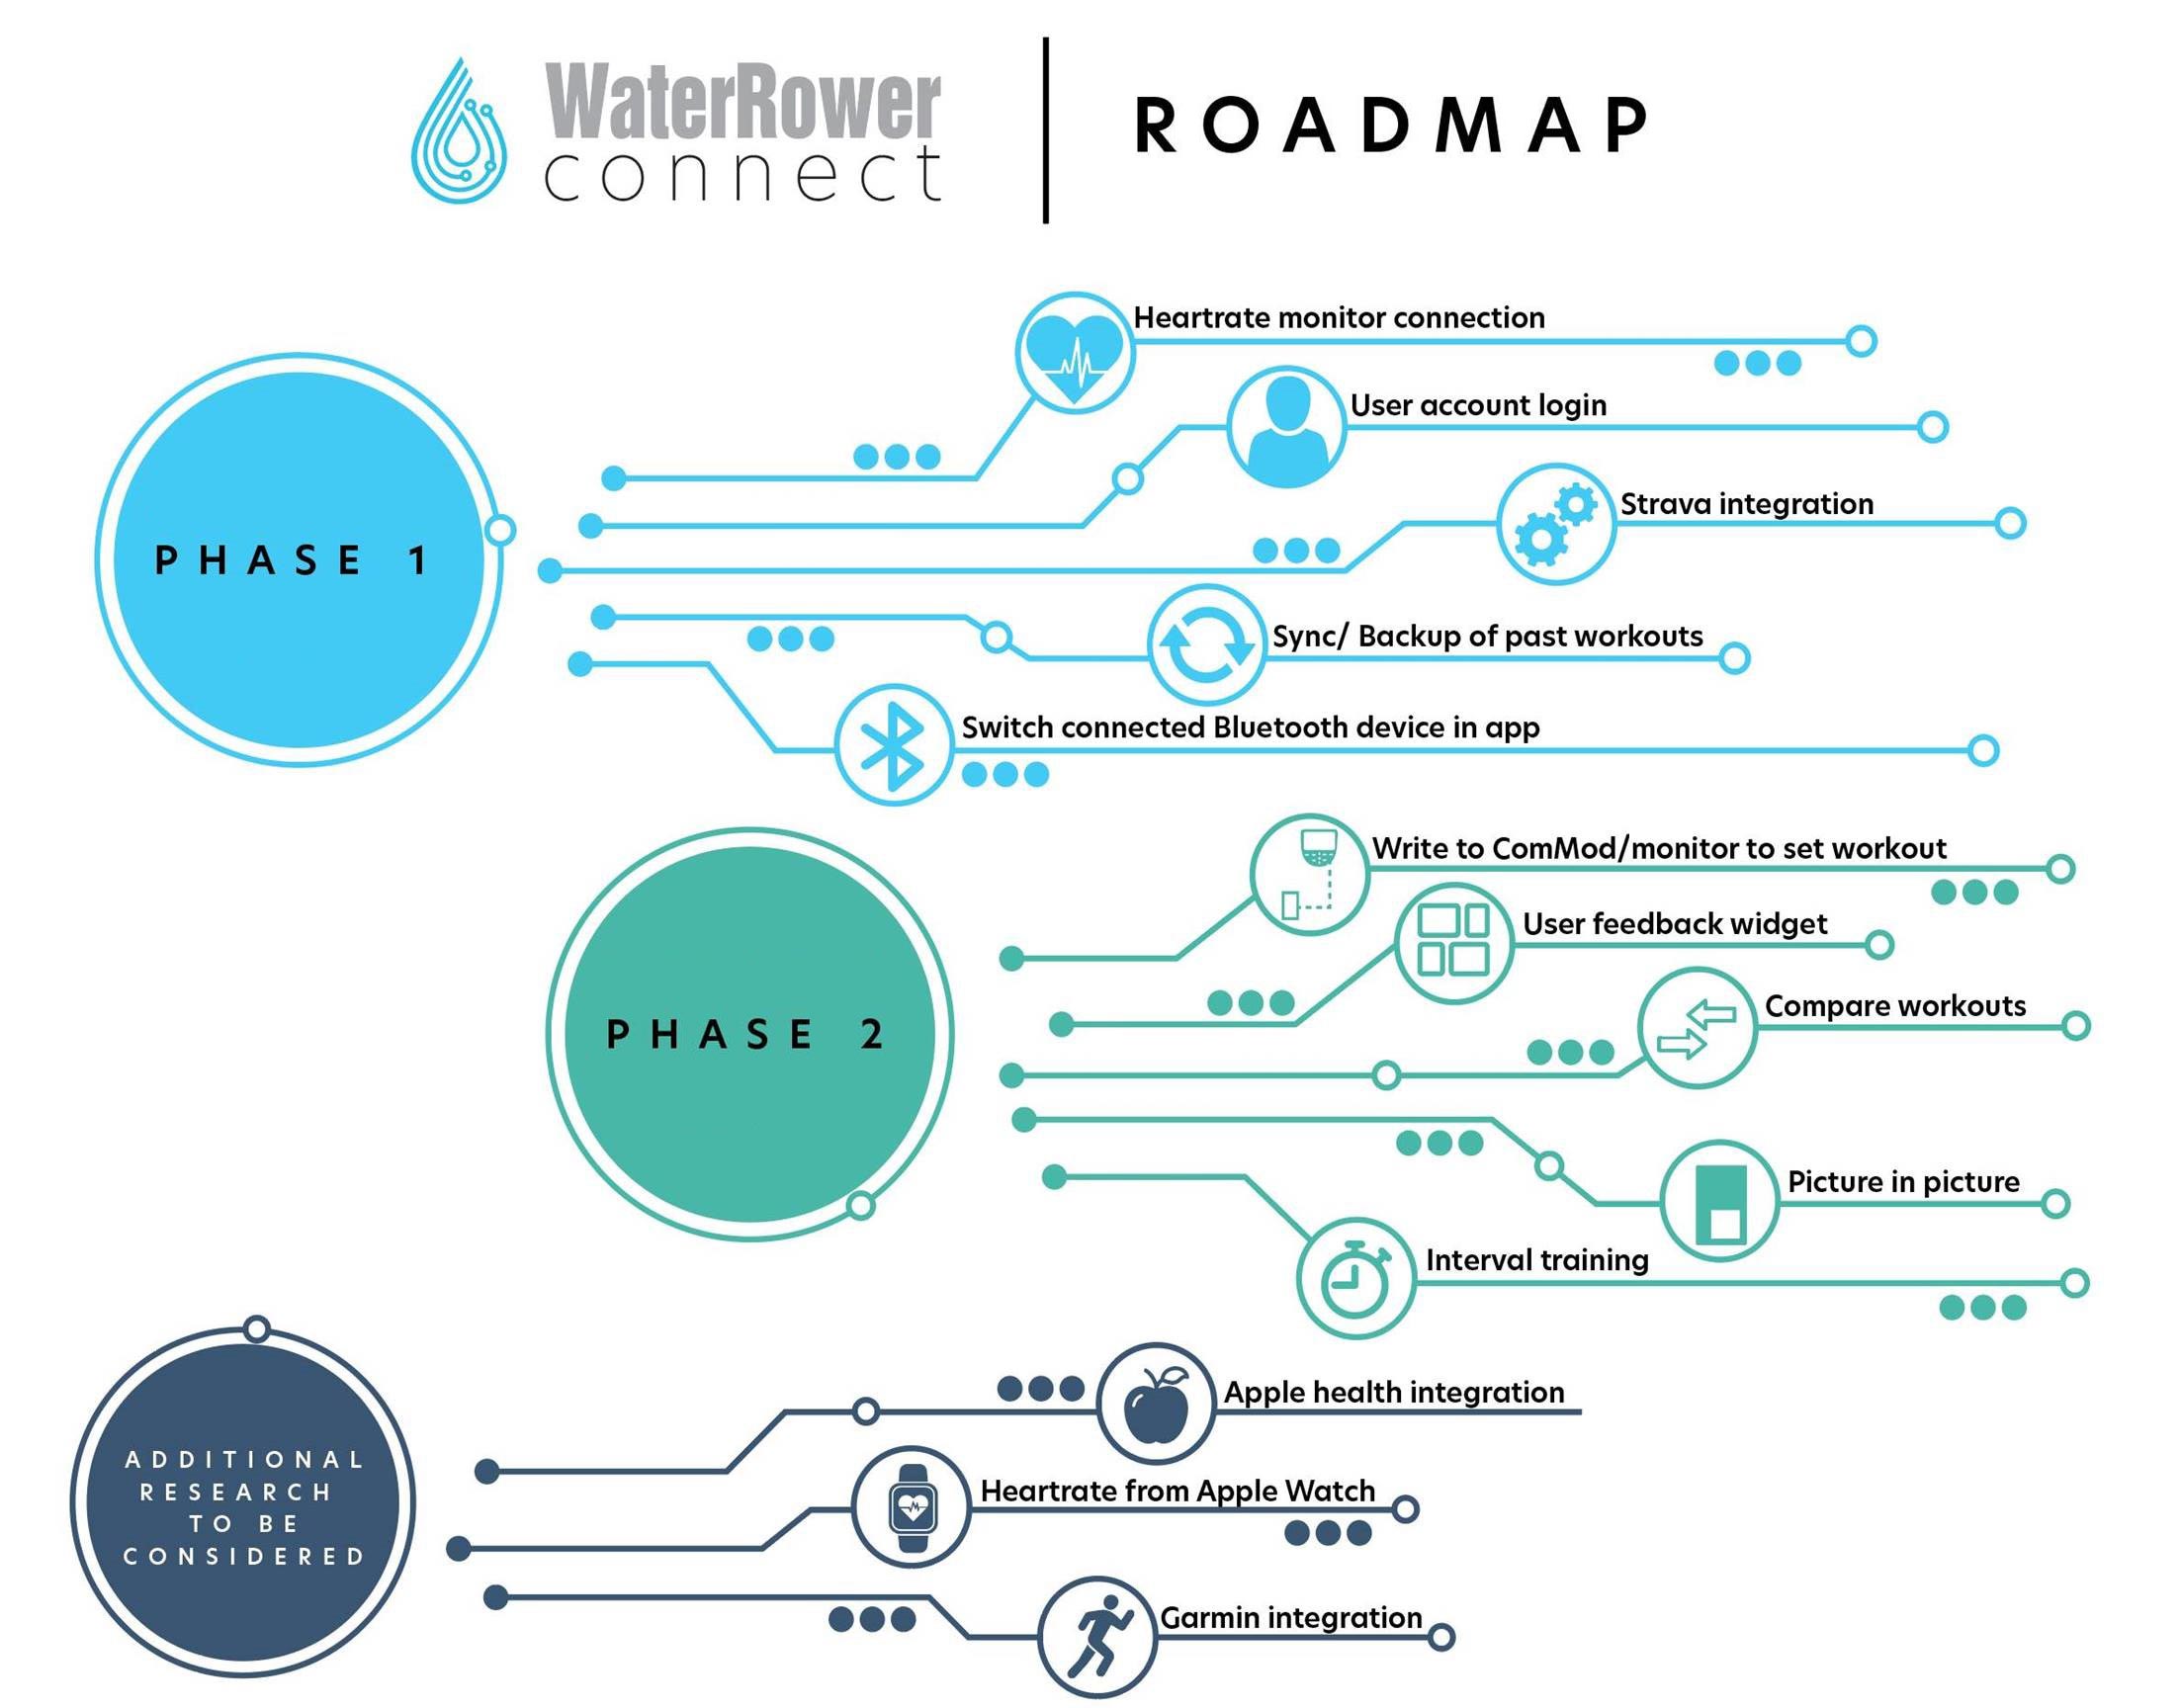 WaterRower Connect Roadmap